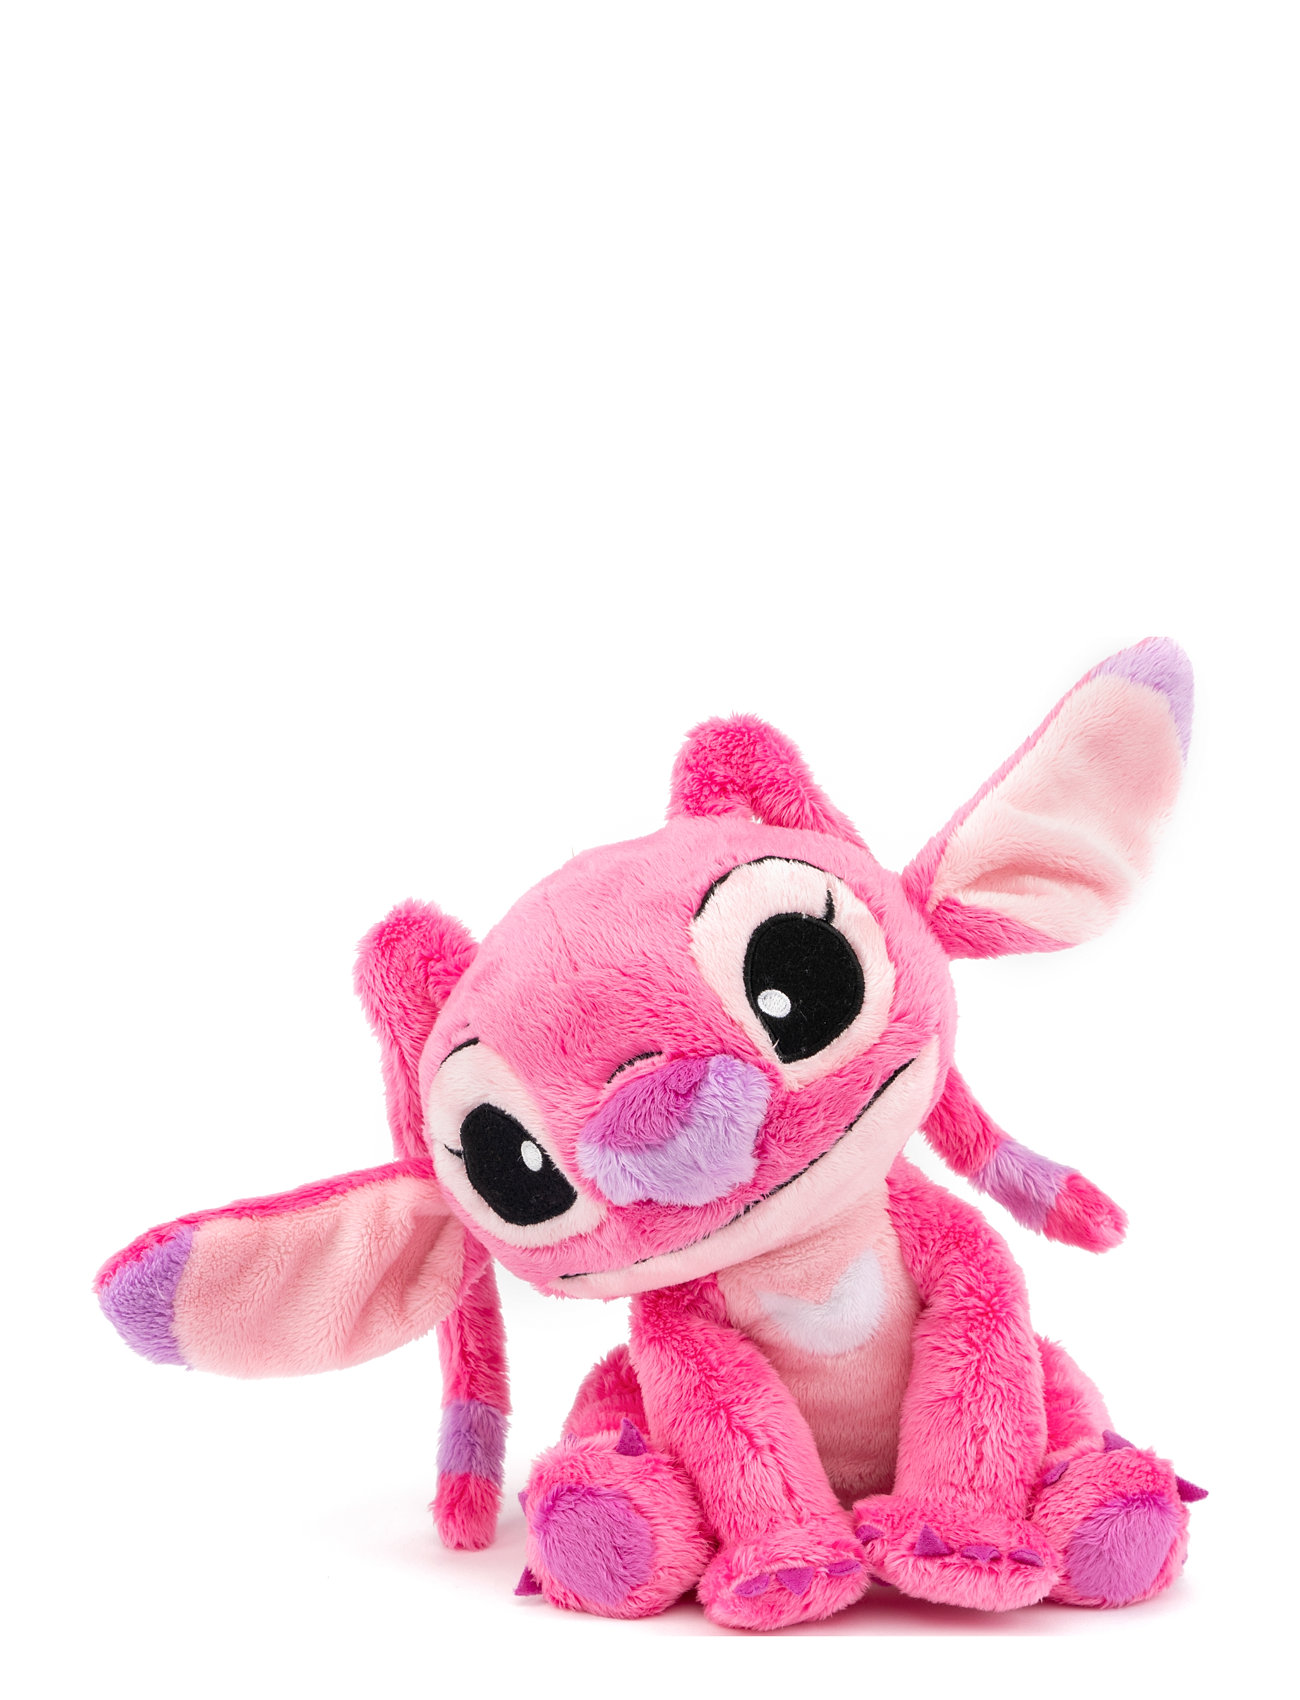 Disney - Angel Toys Soft Toys Stuffed Toys Multi/patterned Lilo & Stitch